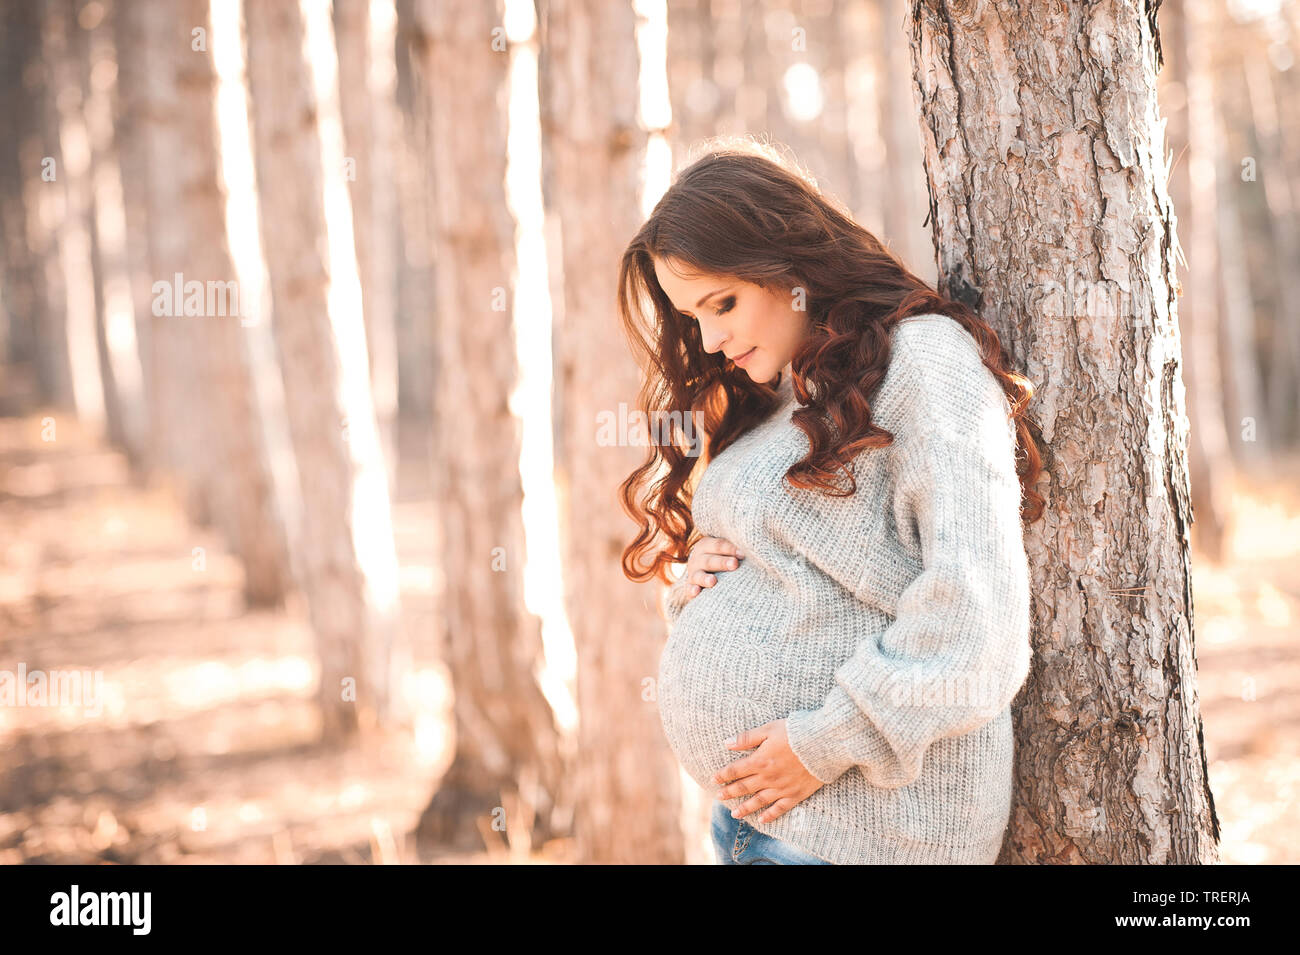 Lächelnd stilvolle schwangere Frau 30-34 Jahre alten tragen gestrickte Pullover im Park. Herbst Saison. Stockfoto